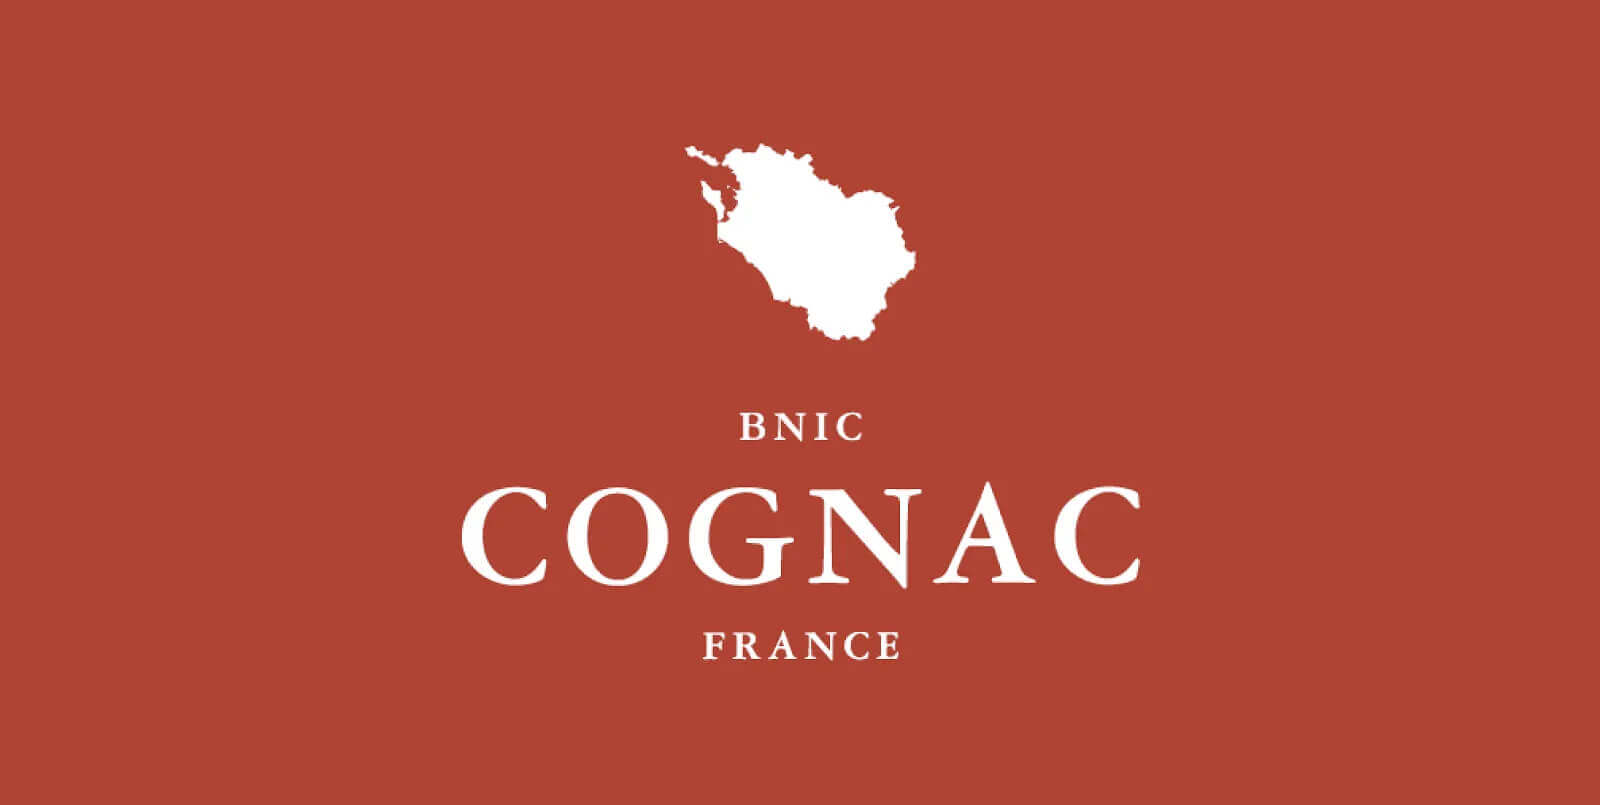 Le BNIC - Bureau National Interprofessionnel du Cognac - gère l'appellation Cognac